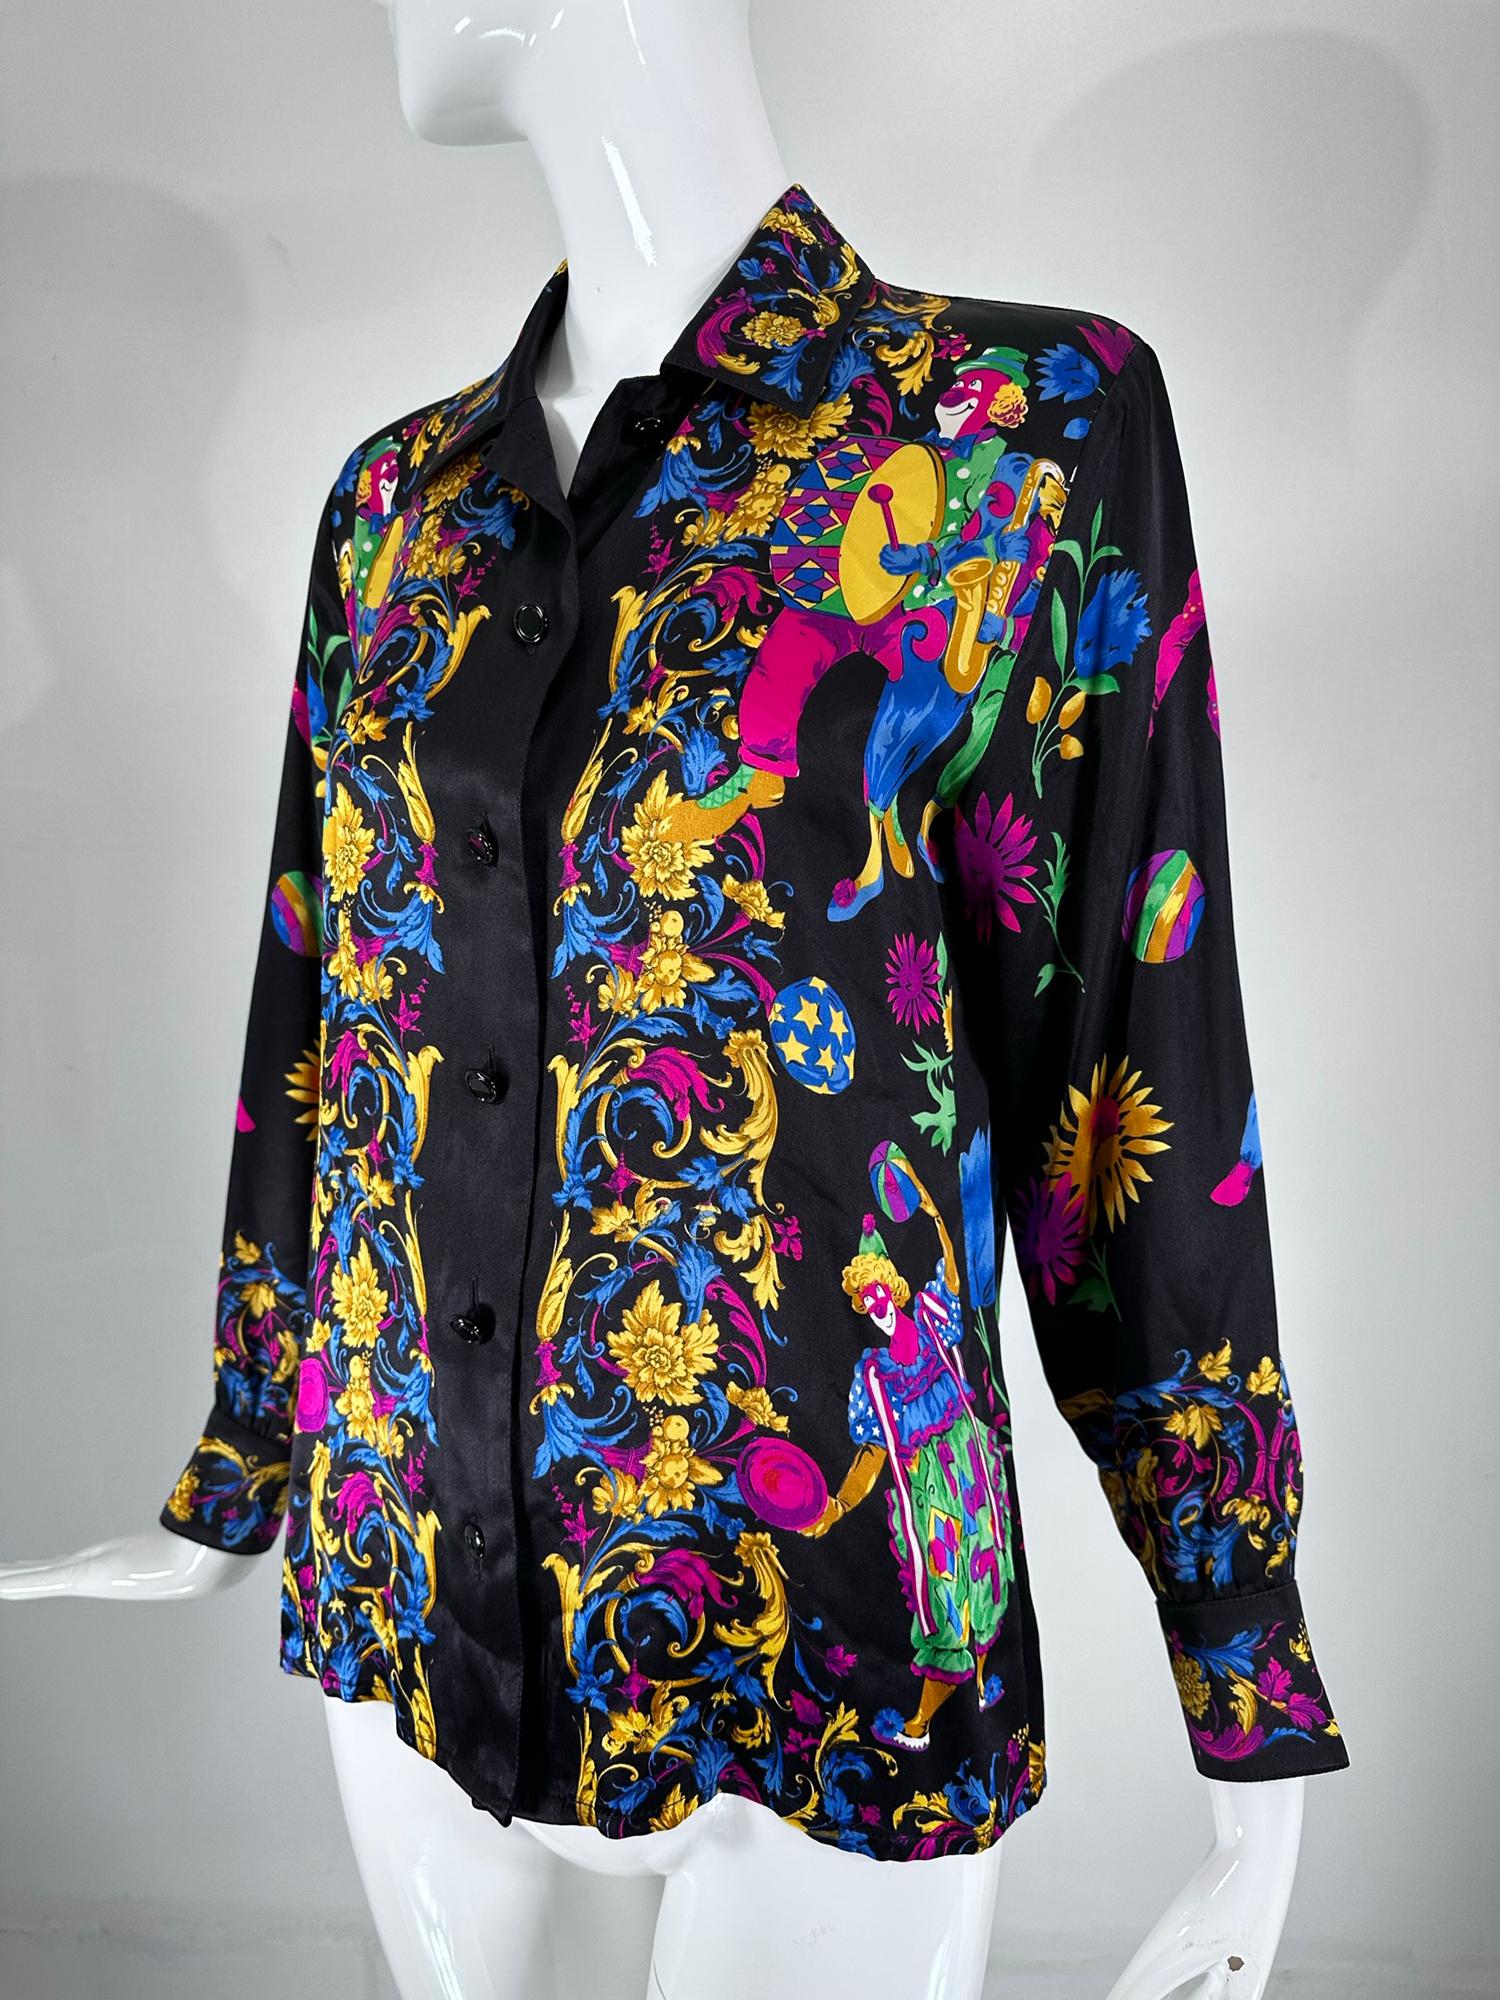 Margaretha Ley for Escada rare blouse de collection en soie imprimée avec des clowns des années 1990. Soie noire imprimée de couleurs vives et d'un assortiment de clowns joyeux faisant des trucs de clowns ! Le recto est orné de bordures classiques